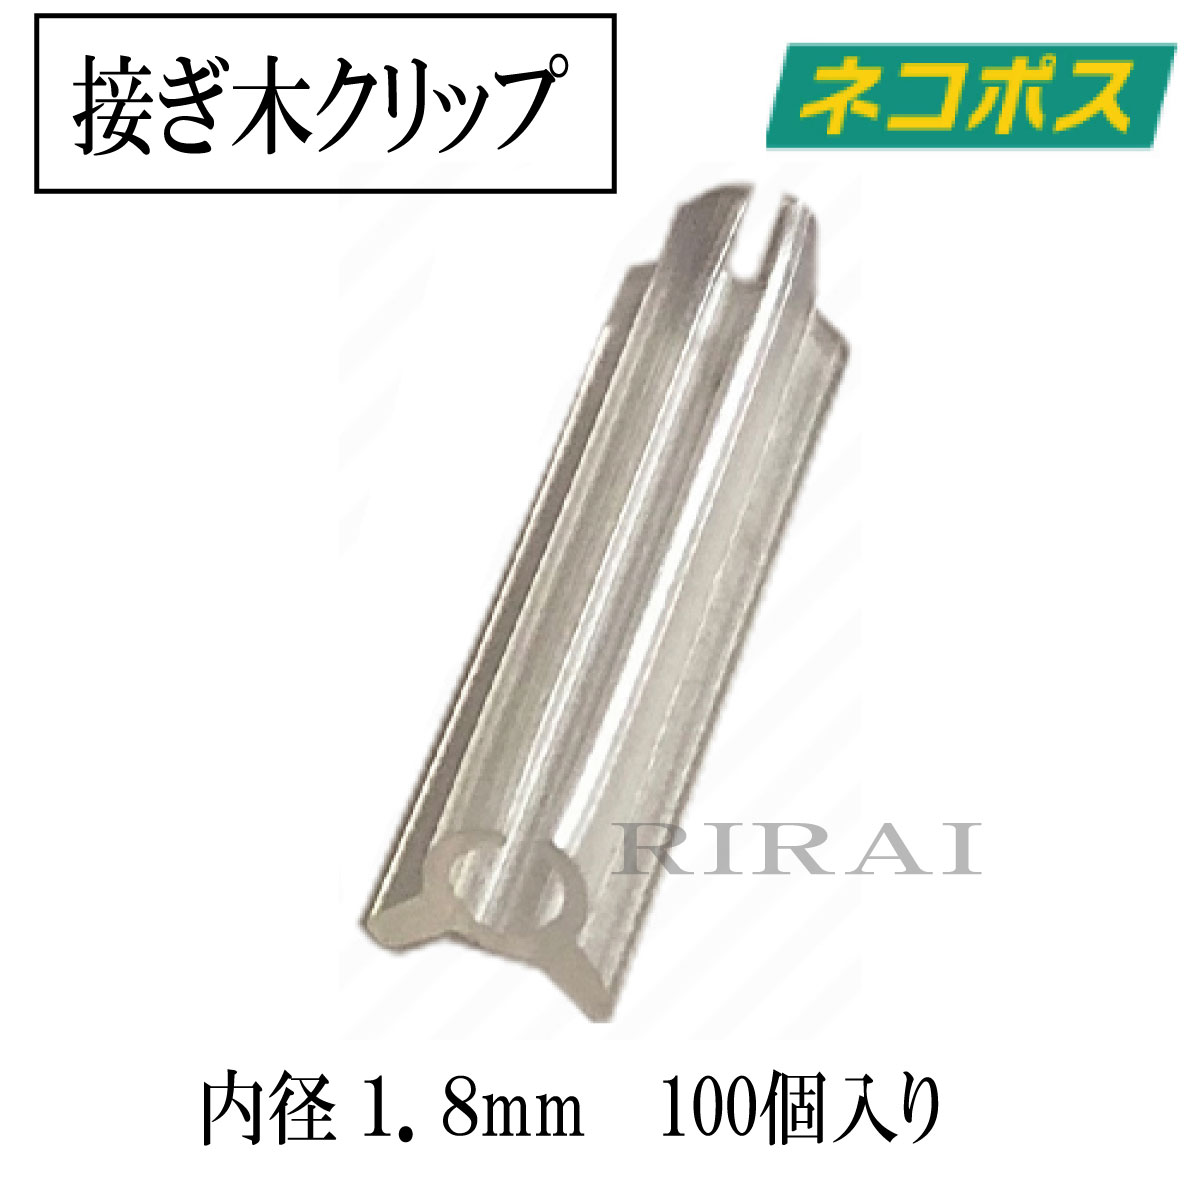 商品情報サイズチューブ内径1.8mm対応内径 1.8~2.1mm1.8mm 1.9mm 2.0mm 2.1mm材質EVA樹脂EVA樹脂の特徴は塩素を含まず環境に優しいエコ素材であり優れた弾力性と柔軟性生産国日本製配送方法日本全国送料無料ネコポス（ヤマト運輸）ブランド名RIRAIRIRAI リライ リライ りらい商品名接ぎ木クリップ接木クリップ 接木具 接木チューブ 接ぎ木チューブ接ぎ木方法全農式接ぎ木 全農式幼苗接ぎ木苗生産システム接ぎ木クリップ 【1000個入/内径1.4mm 対応内径1.4〜1.7mm】 ナス科 接ぎ木 苗 幼苗 接木 ■接ぎ木用クリップホルダー。ナス科 苗 幼苗 接木の接ぎ木にご利用ください。ナス、トマト、ピーマンなどの接ぎ木におすすめです。 ■「全農式接ぎ木」・「全農式幼苗接ぎ木苗生産システム」の接ぎ木に最適な接ぎ木チューブです。 ■日本農業新聞に掲載された園芸用資材です。ホルダーの上下から茎を簡単に挿入出来ます。 ■チューブ内径1．4mm と 1．8mm と 2．2mm の3サイズ展開。 長さが14〜15mmあるので、穂木が外れにくい仕様。 ■茎の口径が少し太い場合には、 クリップのようにつまむと挿入口を少し広げる事も出来て 、茎を傷つけにくい仕様。 ■チューブが軽いので、苗の負担が軽減。 EVA樹脂は塩素を含まず環境に優しいエコ素材です。 日本製 接ぎ木 接木クリップ 果樹 苗木 支柱 園芸 誘引 苗 トマト 栽培 果樹苗木 接ぎ木クリップ 園芸クリップ 誘引クリップ 接ぎ木 クリップ 園芸クリップ ワイヤークリップ 園芸用支柱 誘引テープ 支柱クリップ 結束ワイヤー プラスチック ホルダー 台木 接木ホルダー 園芸用 結束機 野菜 透明プラスチッククリップ 園芸用テープ 接ぎ木用ハサミ 接ぎ木用カッター 接ぎ木用テープ 接ぎ木用ナイフ 支柱バンド 園芸用品 植木鉢 プランター 誘引紐 結束機 テープナー 園芸クリップピンチ接ぎ木クリップ 100個入　【内径1.8mm 対応内径1.8〜2.1mm】 ナス科 接ぎ木 苗 幼苗 接木 1.8mm / 1.9mm / 2.0mm / 2.1mm 接ぎ木クリップ トマト ナス 接木クリップ 日本全国送料無料 ネコポス（ヤマト運輸） 病害虫対策と生育促進目的に「接ぎ木苗」は不可欠で、接ぎ木作業に最適な「接ぎ木クリップ」 接ぎ木用クリップホルダー ナス科 苗 幼苗 接木の接ぎ木にご利用ください。ナスやトマトやピーマンなどの接ぎ木におすすめです。■農家の意見を聞いて開発した安価な接ぎ木具（接木具）「接木用クリップホルダー」　 全農式接ぎ木・全農式幼苗接ぎ木苗生産システムの接ぎ木に最適な接ぎ木チューブです。■茎の口径が少し太い場合には、 クリップのようにつまむと挿入口を少し広げる事も出来て　 茎を傷つけにくい仕様。■ホルダーの上下から茎を簡単に挿入出来ます。■チューブが軽いので、苗の負担が軽減。■本体のEVA樹脂は柔軟性と弾力性のある素材なので、茎を傷つけにくく つまんだ部分を　離すと挿入口が元の形にしっかり戻ります。■EVA樹脂は塩素を含まず環境に優しいエコ素材であり 紫外線にも強く劣化しにくい素材■3サイズ展開・チューブ内径 1.4mm / 対応内径 1.4〜1.7mm（ 1.4mm / 1.5mm / 1.6mm / 1.7mm )・チューブ内径 1.8mm / 対応内径 1.8〜2.1mm ( 1.8mm / 1.9mm / 2.0mm / 2.1mm )・チューブ内径 2.2mm / 対応内径 2.2〜2.5mm（ 2.2mm / 2.3mm / 2.4mm / 2.5mm ) 生産者から家庭菜園者が簡単に使える接ぎ木クリップ 使い捨てなので、安価な価格設定にしております 挿入口を少し広げる事も出来て茎を傷つけにくい仕様 安価な接ぎ木用クリップをお探しの方 野菜を病気から防ぎたい方 全農式接ぎ木の接ぎ木に 接ぎ木クリップ 【100個入/内径1.8mm 対応内径1.8〜2.1mm】 ナス科 接ぎ木 苗 幼苗 接木接ぎ木用クリップホルダー。ナス科のナス、トマト、ピーマンなどの接ぎ木におすすめです。【全農式幼苗接ぎ木苗生産システム】出典: フリー百科事典『ウィキペディア（Wikipedia）』より引用　最終更新 2020年5月26日 (火) 01:521990年に板木利隆によって開発された、セル成型苗を台木・穂木ともに斜め切りして支持具で固定する接ぎ木法である。台木をセルトレイ上に植えたままの状態で楽に簡単に接ぐことができるため、広く使われるようになり、セル成型苗を利用した接ぎ木法としては現在、世界でもっとも普及している。【内容】台木・穂木ともにセルトレイで育てた幼苗を用い、子葉上の第1節間を斜め30度に切断する。その後、接合部をチューブ状の支持具で圧着固定する。これを活着促進装置（ナエピット）に入れ、最適温度28℃（昼夜間）、湿度93％、照明時間12時間で、3から4日ほど遮光状態で養生する。【効果】切断面は斜め30度で、接合面を大きく、圧着しやすくすることにより活着率を高めた。活着促進装置により、最適条件に保たれることにより、接ぎ木歩留まりは100%近くまで向上した。また、支持具には縦に割れ目が入っており、苗が生長すると自然に脱落するようになっている。従来は接ぎ木を1日あたり400から500本しかできなかったが、1000から1200本まで可能になった。広く普及し、国内だけでなく世界各国で代表的なナス科野菜の接ぎ木方法として採用されている。 1